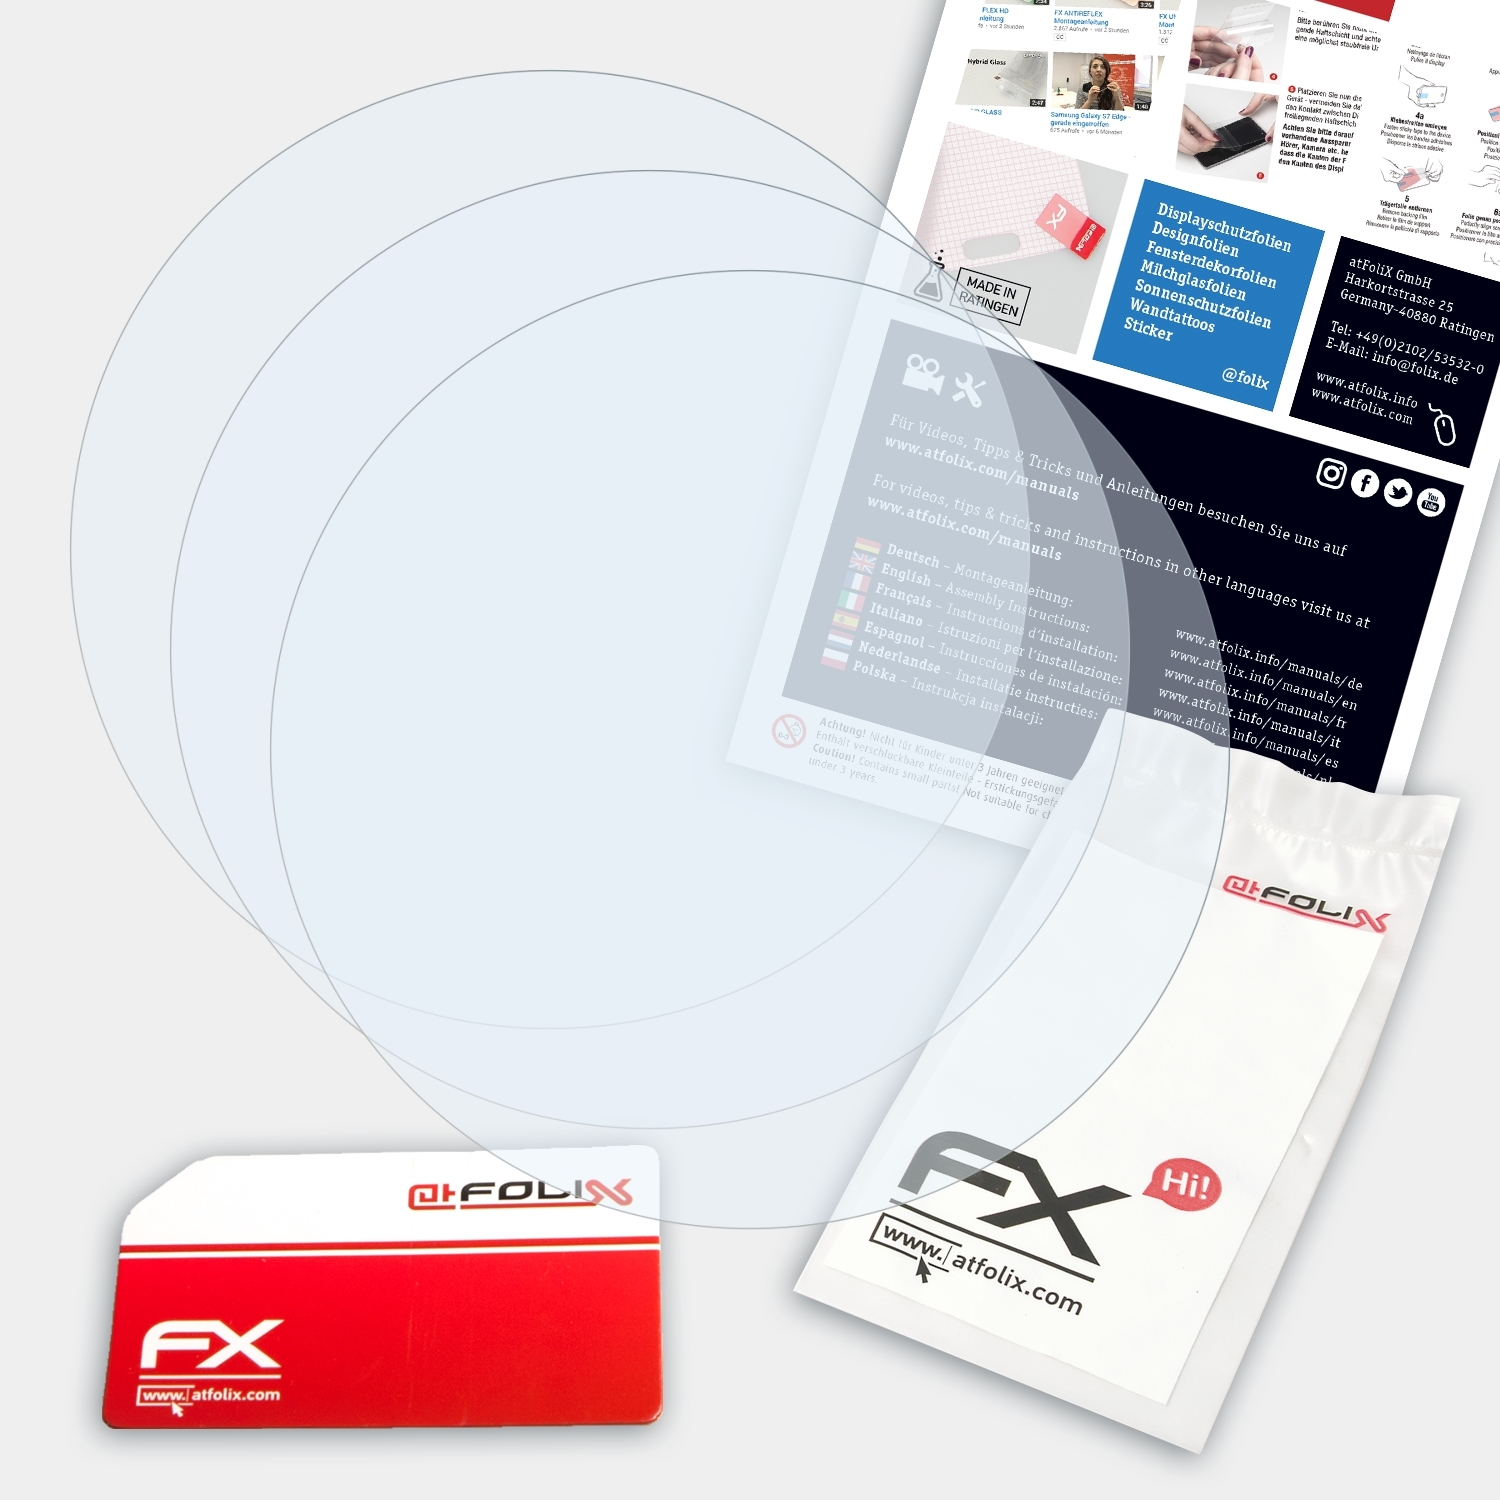 ATFOLIX 3x FX-Clear Displayschutz(für Peak) Suunto Ambit3